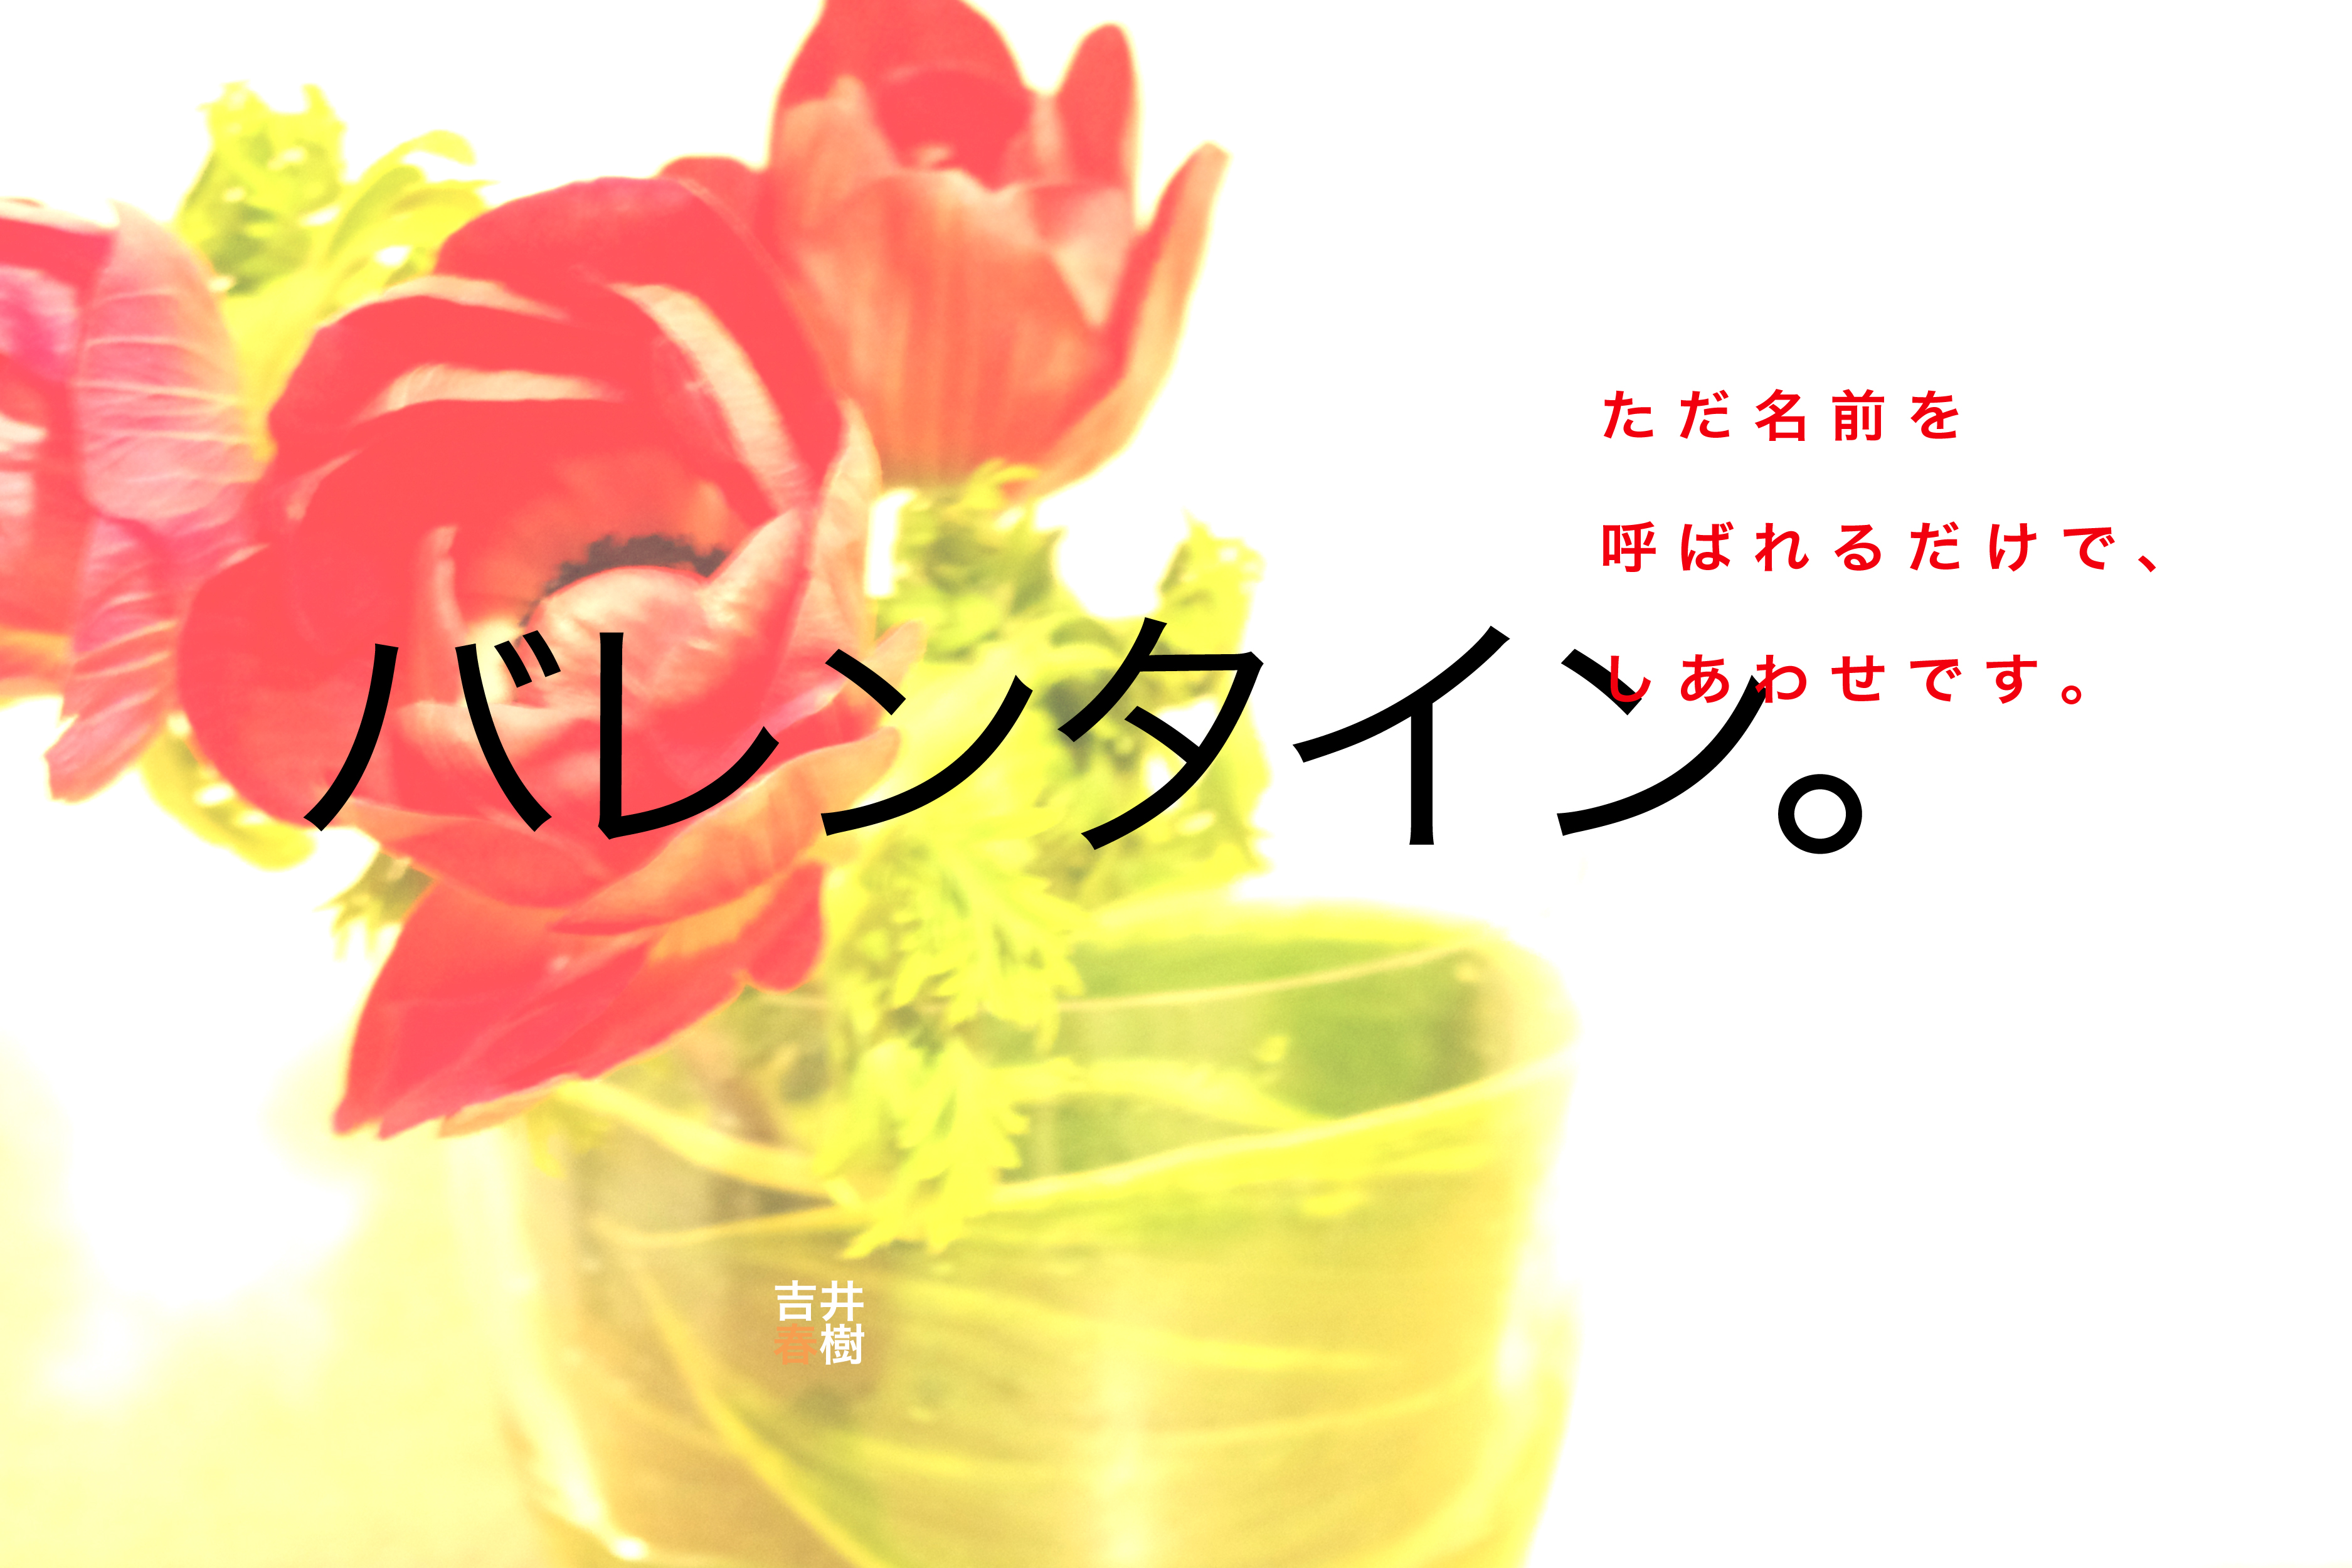 吉井春樹バレンタインポストカード2015_04